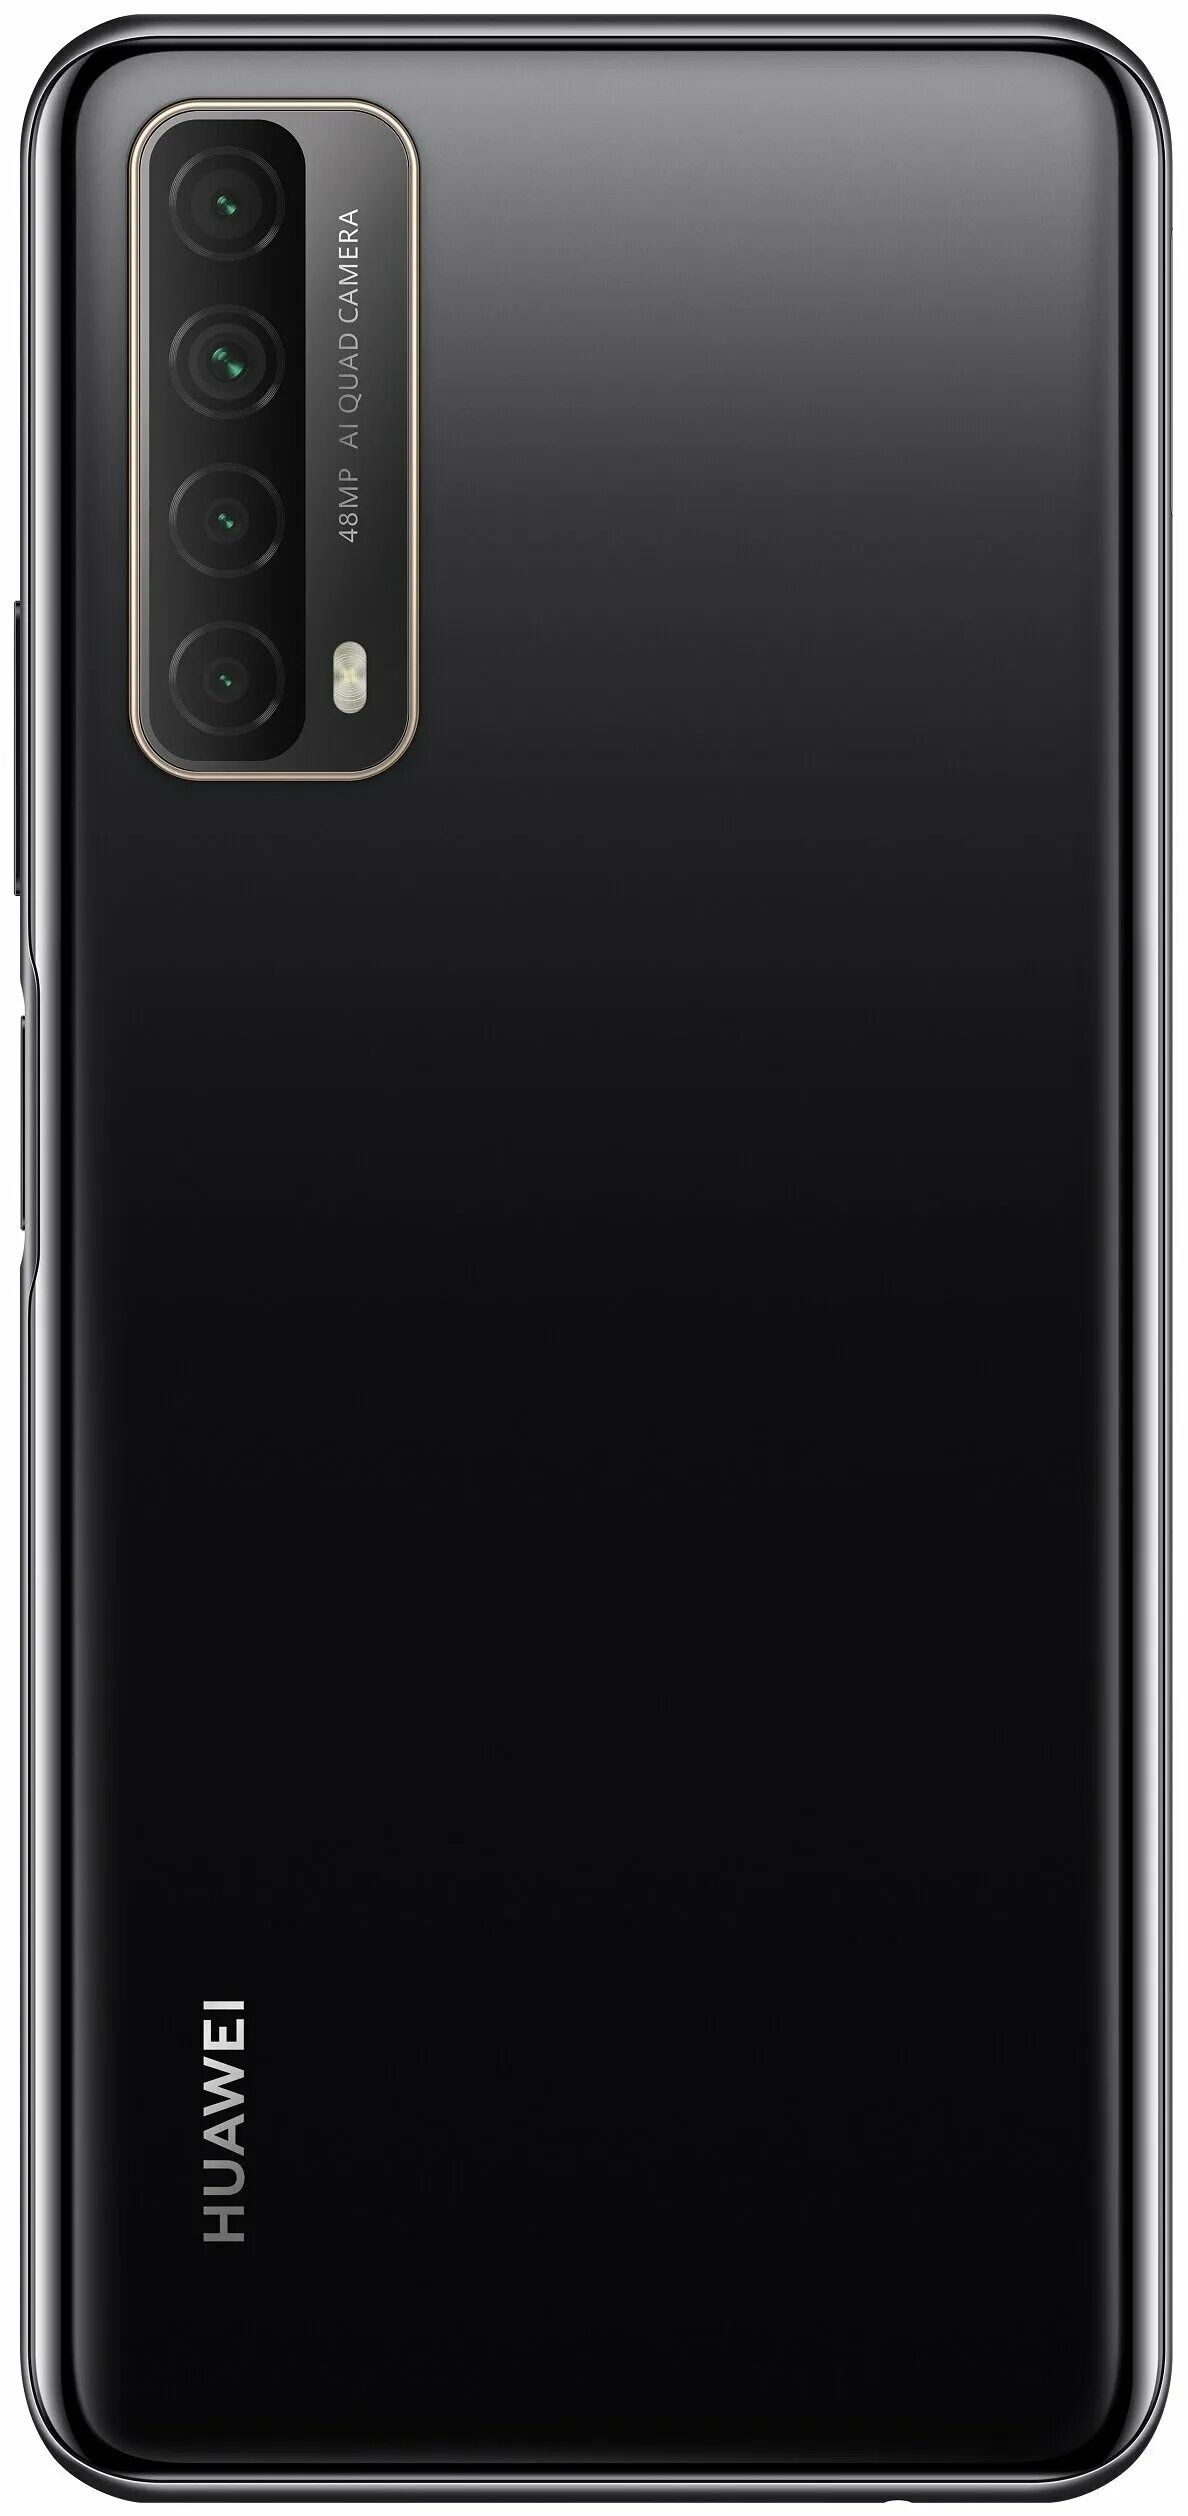 Смартфон Huawei p Smart 2021 128gb, Полночный черный. Хуавей смарт 2021. Huawei p Smart 2021 128gb. Huawei p40 Pro+. Телефоны huawei 2021